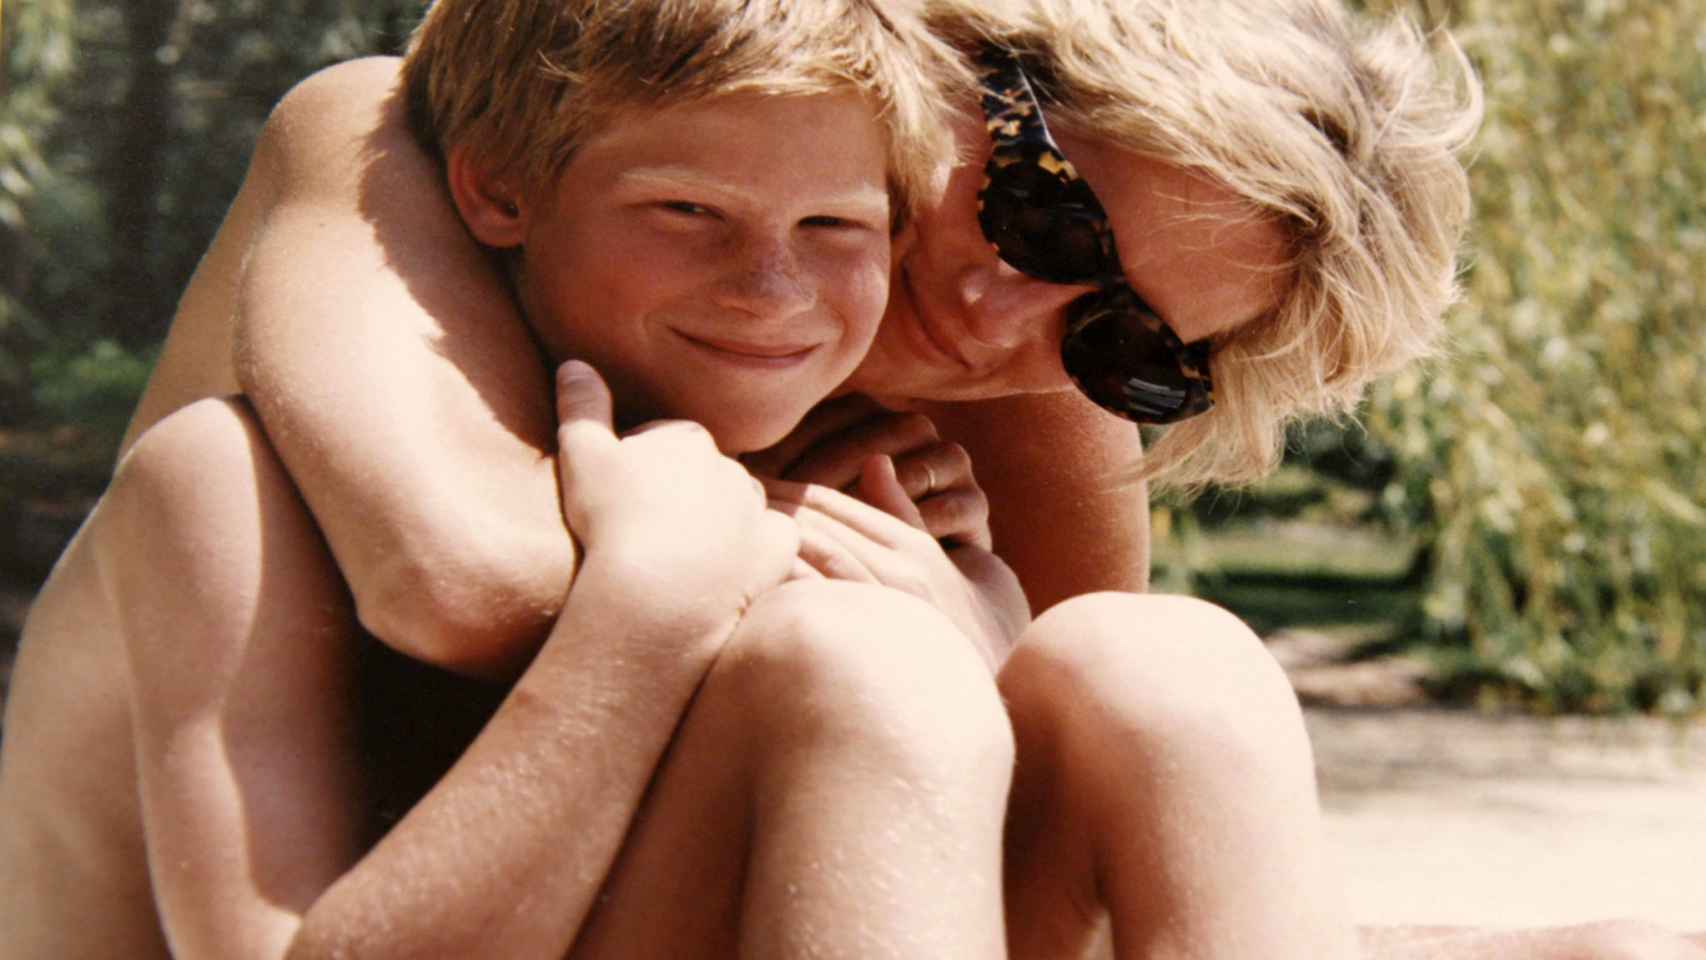 Diana con su hijo pequeño, Enrique, durante unas vacaciones.